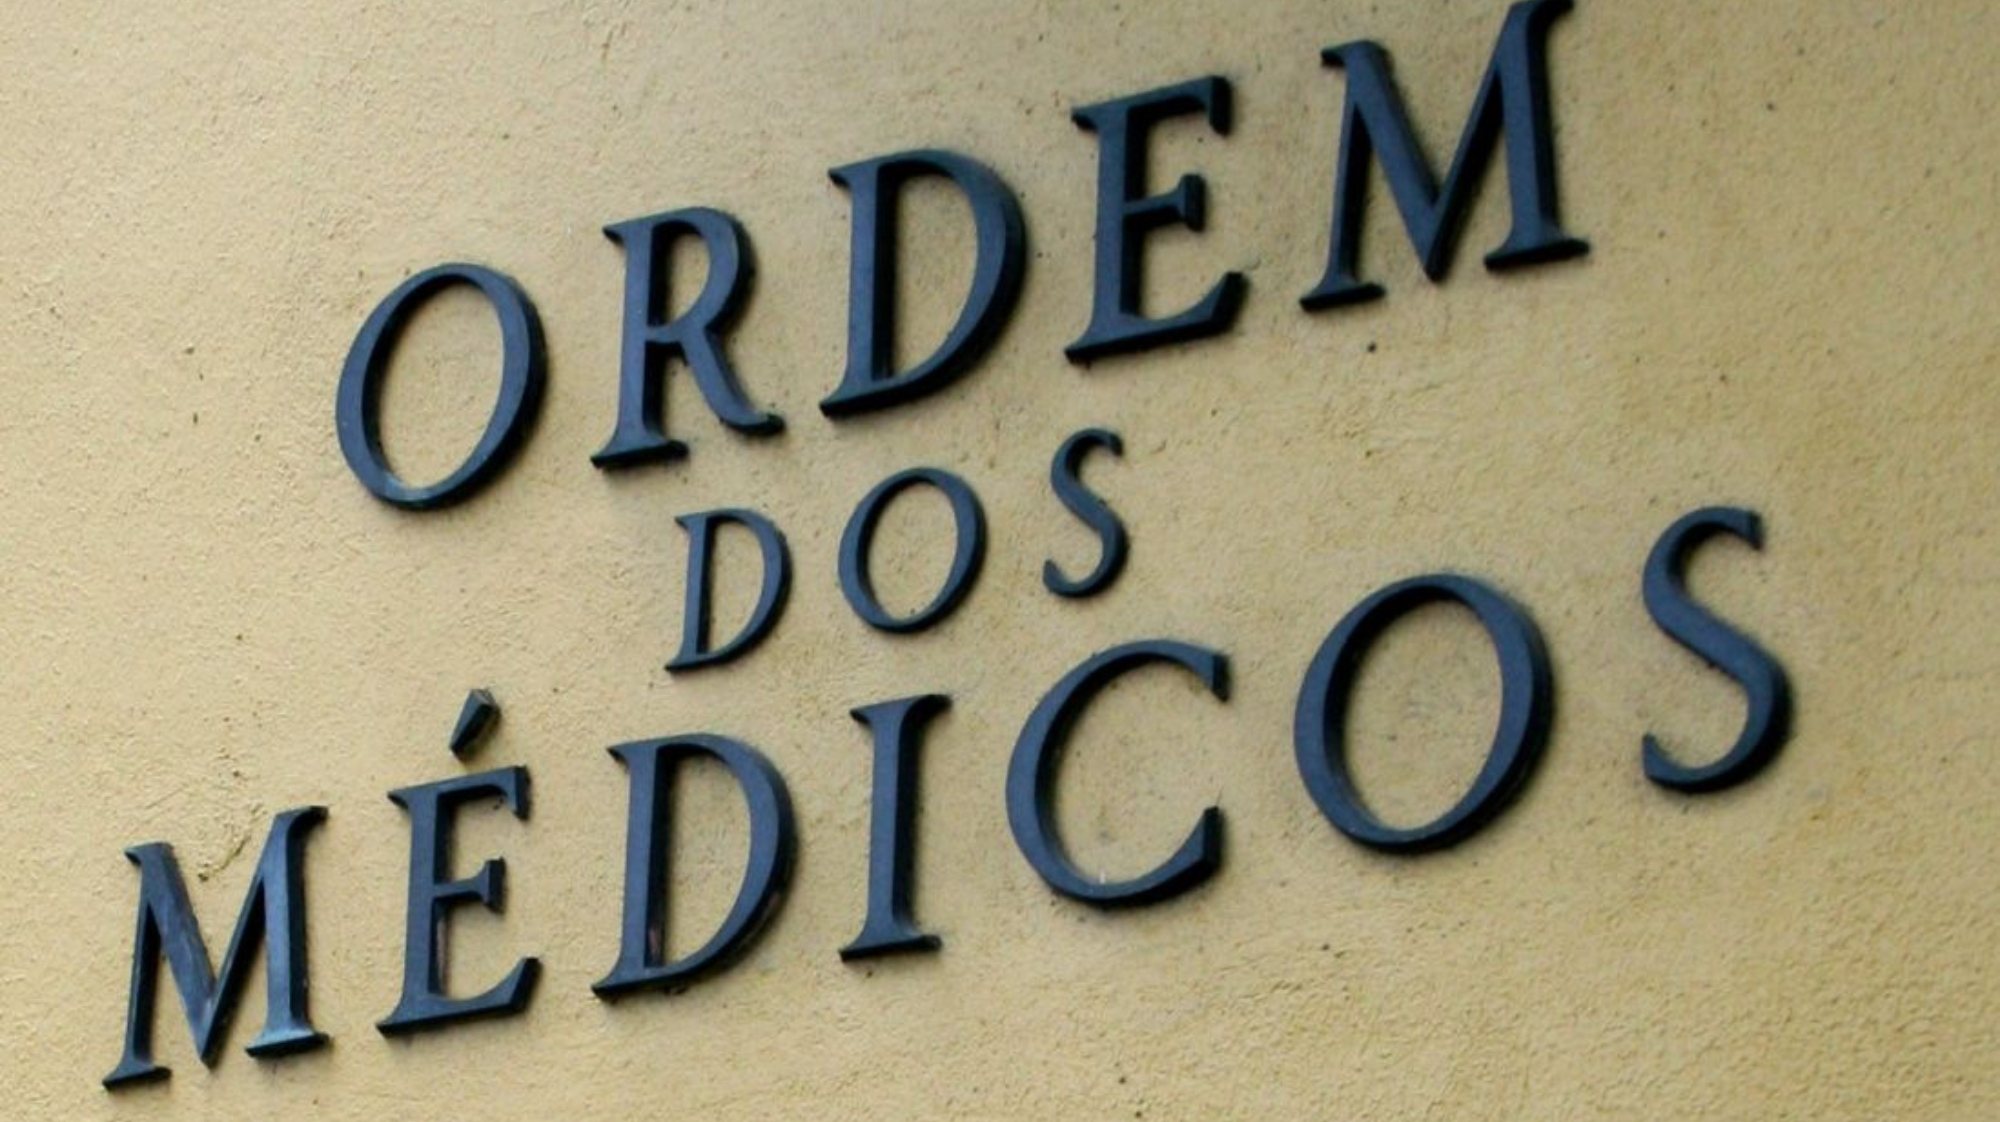 Segundo a denúncia, o médico também foi responsável por colocar outdoors anti-vacinação em Lisboa e no Porto